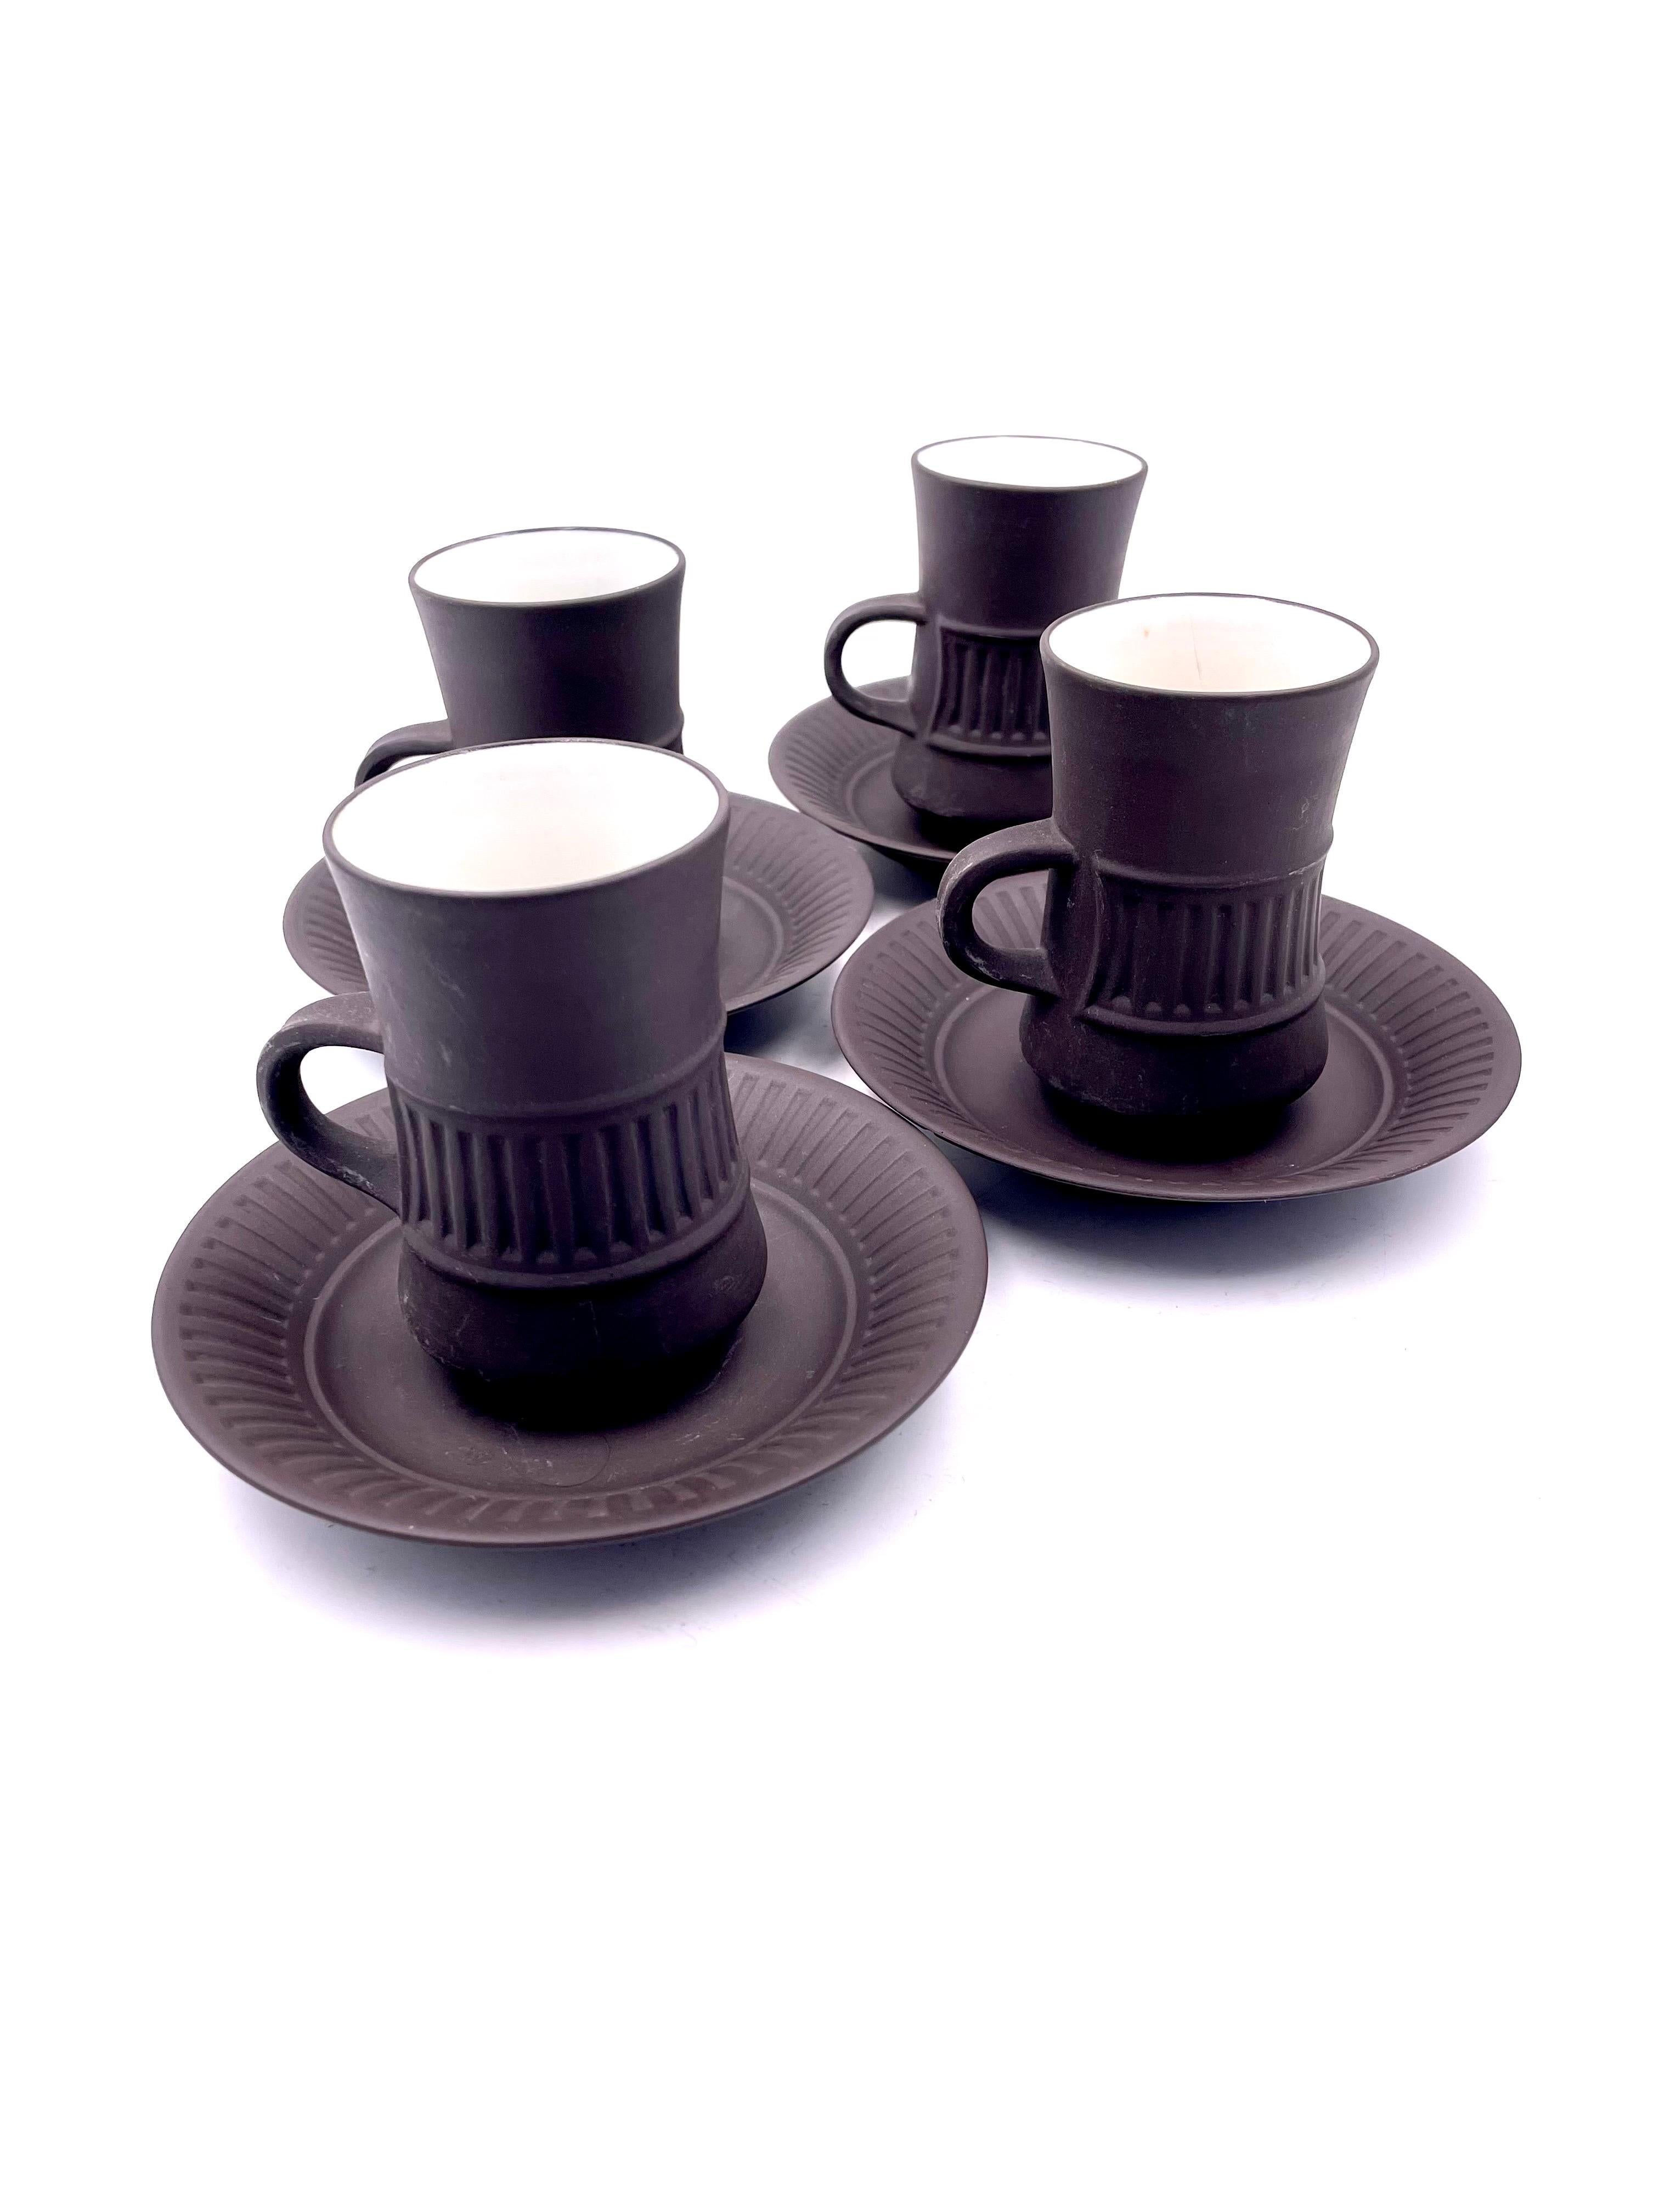 dansk coffee cups